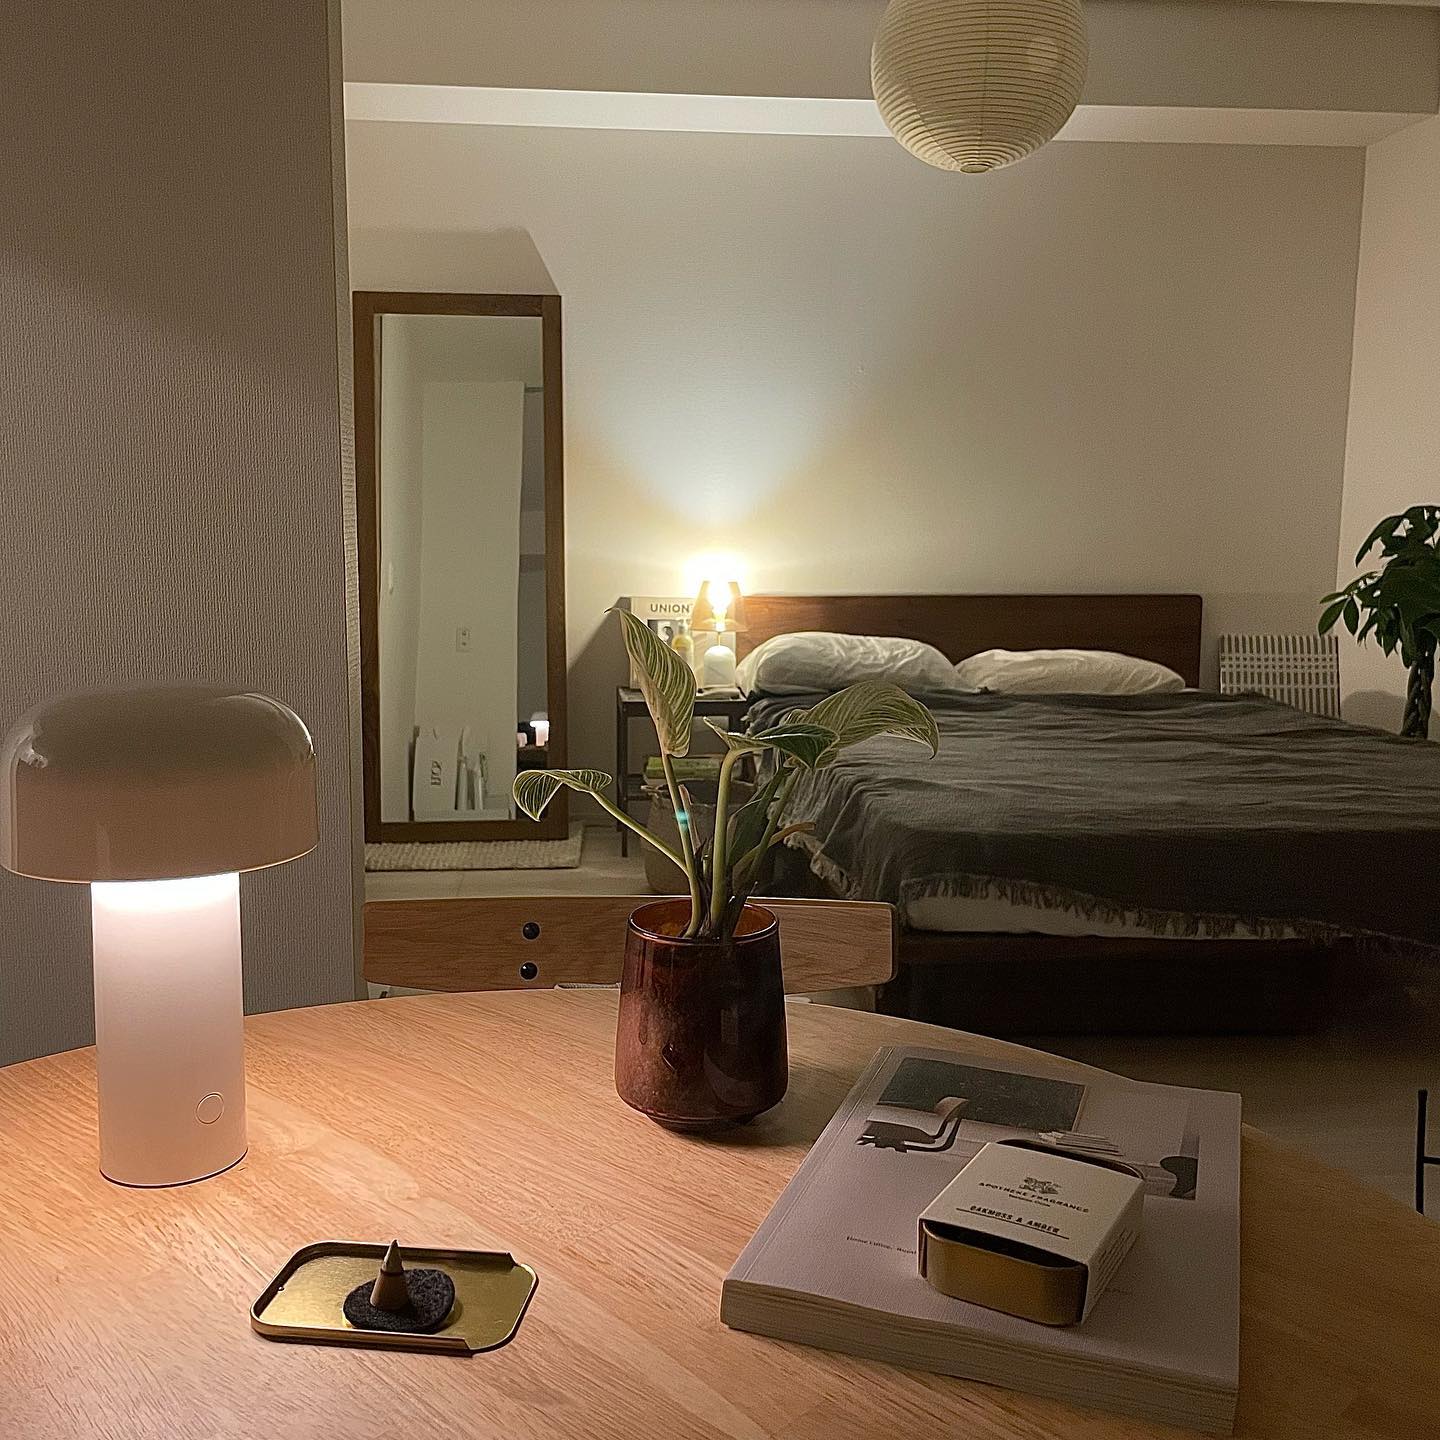 ベッドサイドの読書灯として、ダイニングの手元を照らす灯りとして。デザイナーズランプは、ぐっとお部屋の雰囲気を良くしてくれる気がするので、いつかは1台持っておきたいものです。